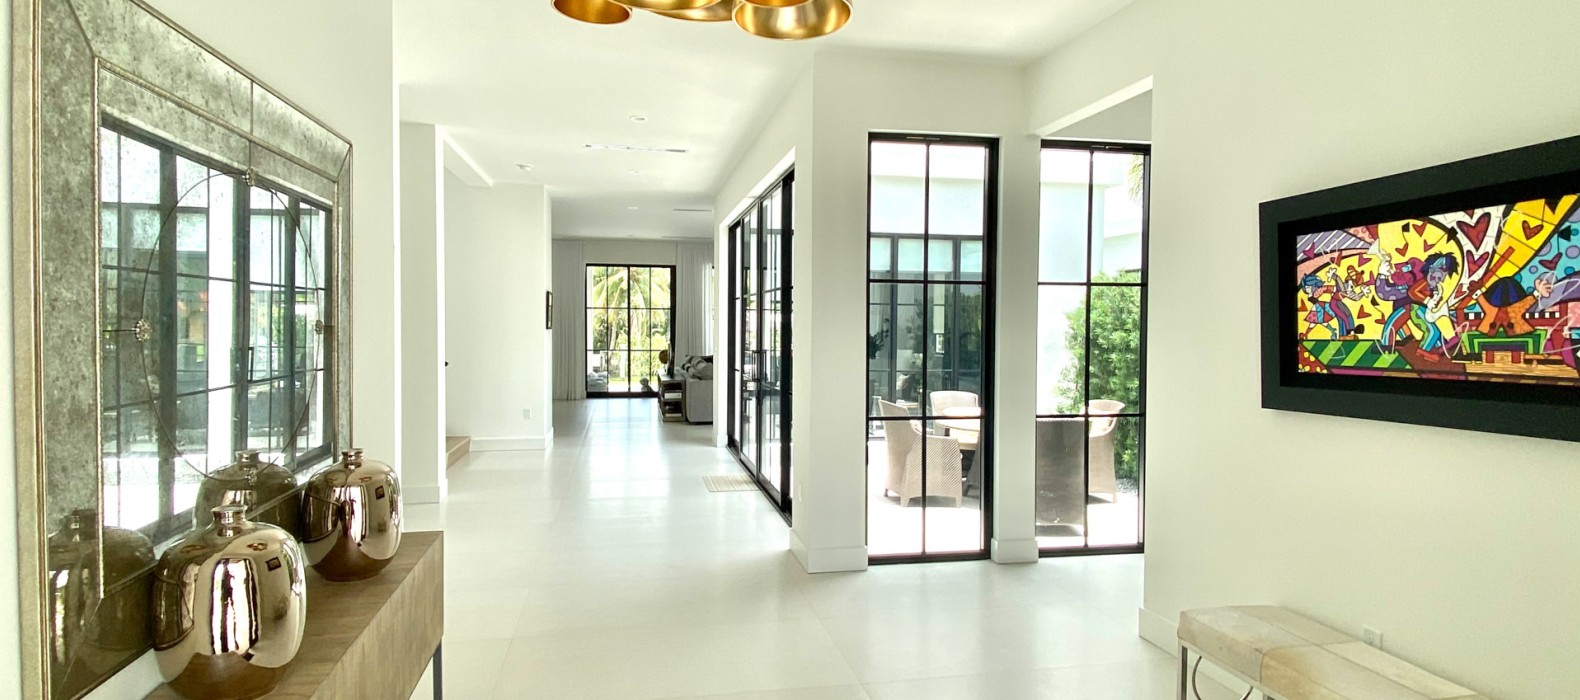 Hallway of Villa Alea in Miami